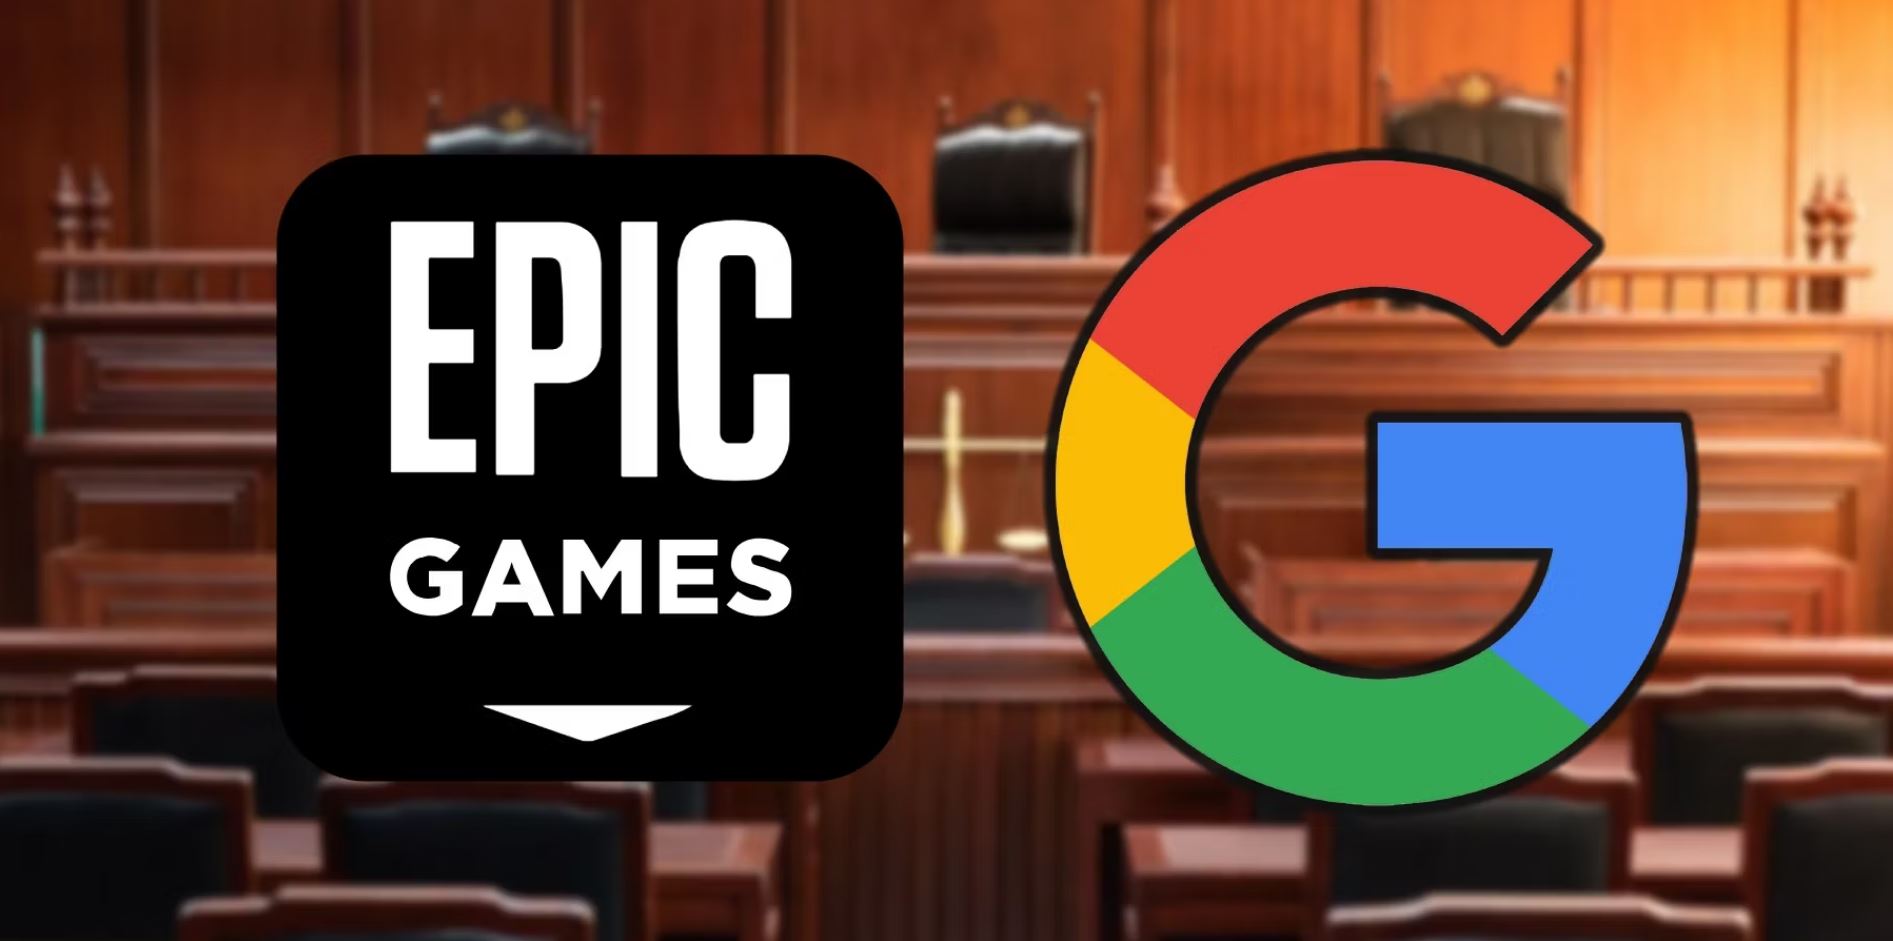 Společnost Epic Games dosáhla významného vítězství proti Googlu v antimonopolním případu